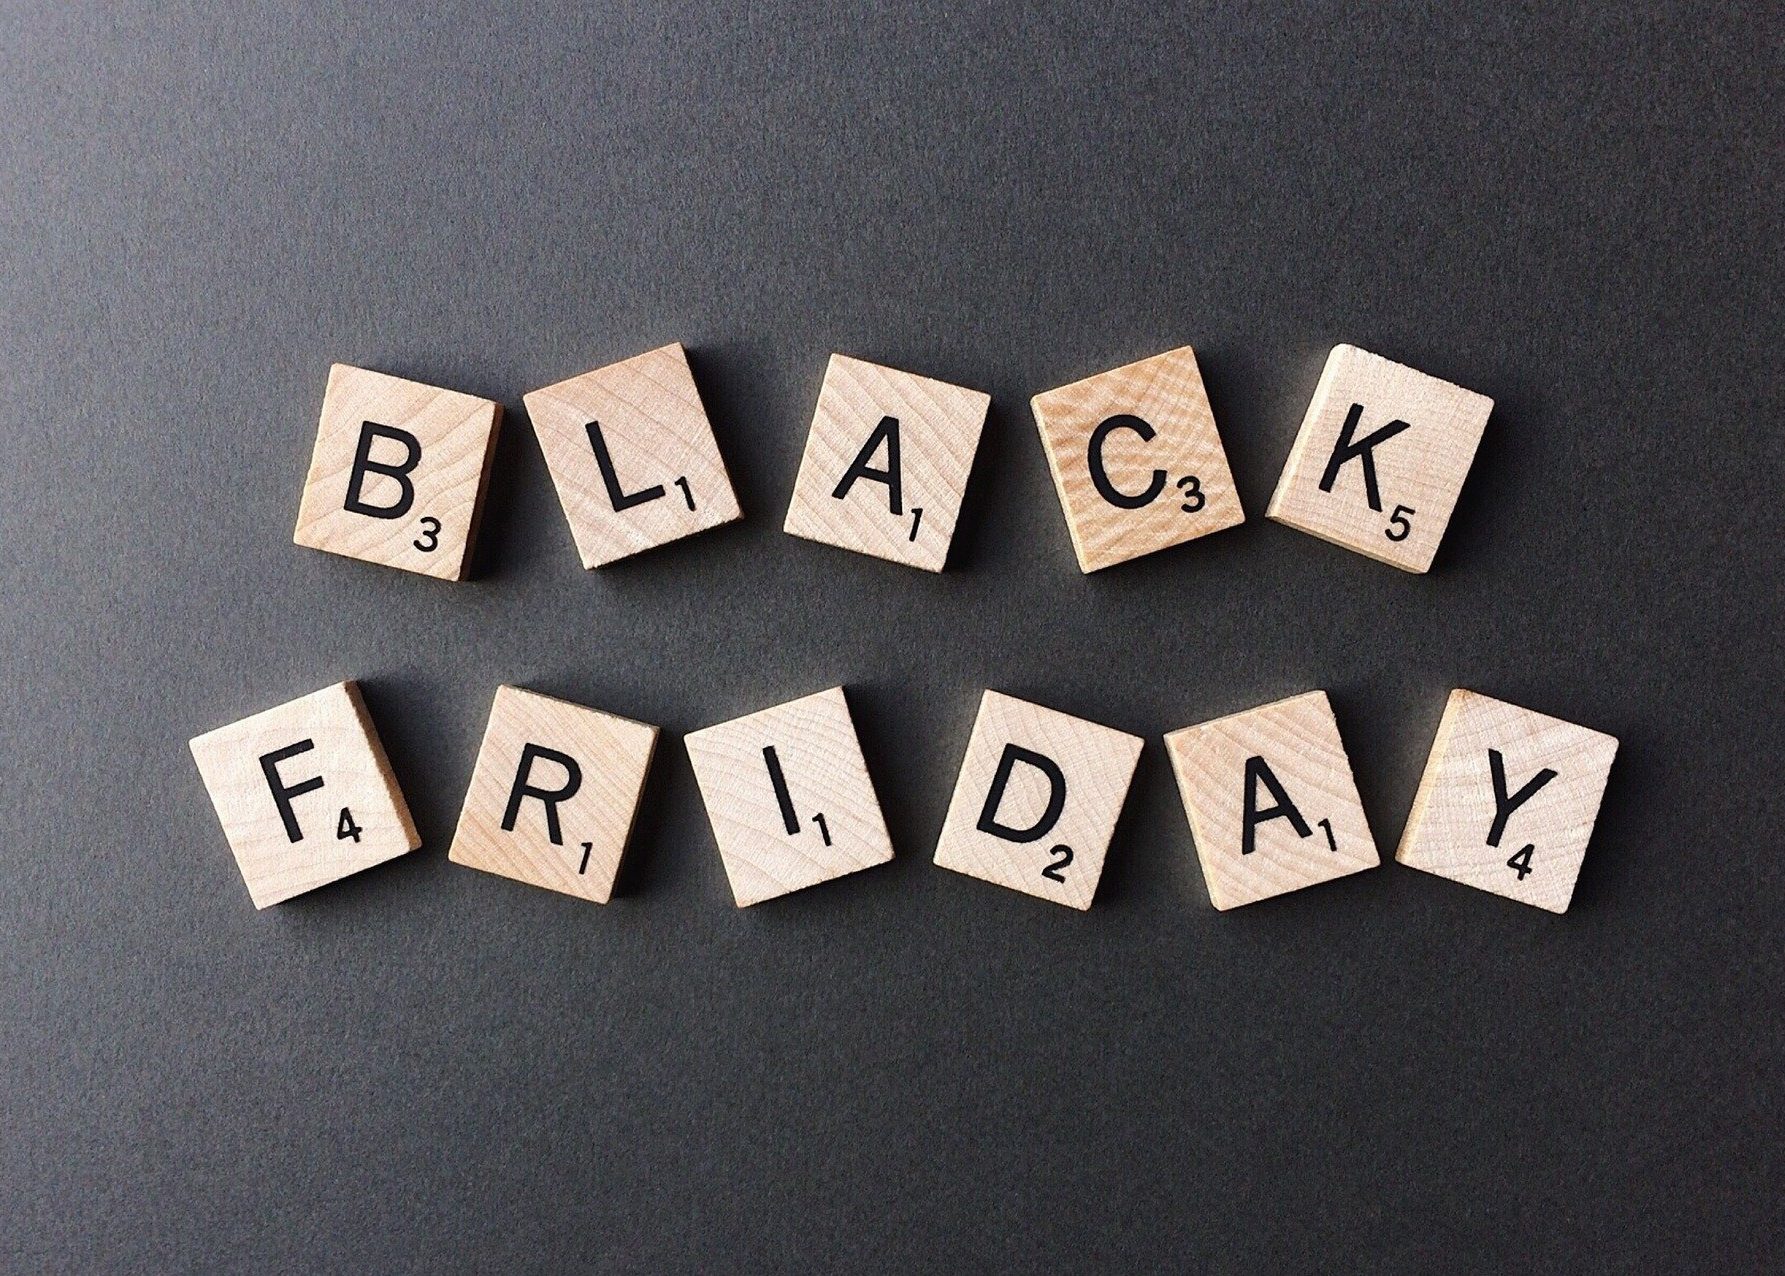 Black Friday on suosittu päivä ostaa etenkin elektroniikkaa.